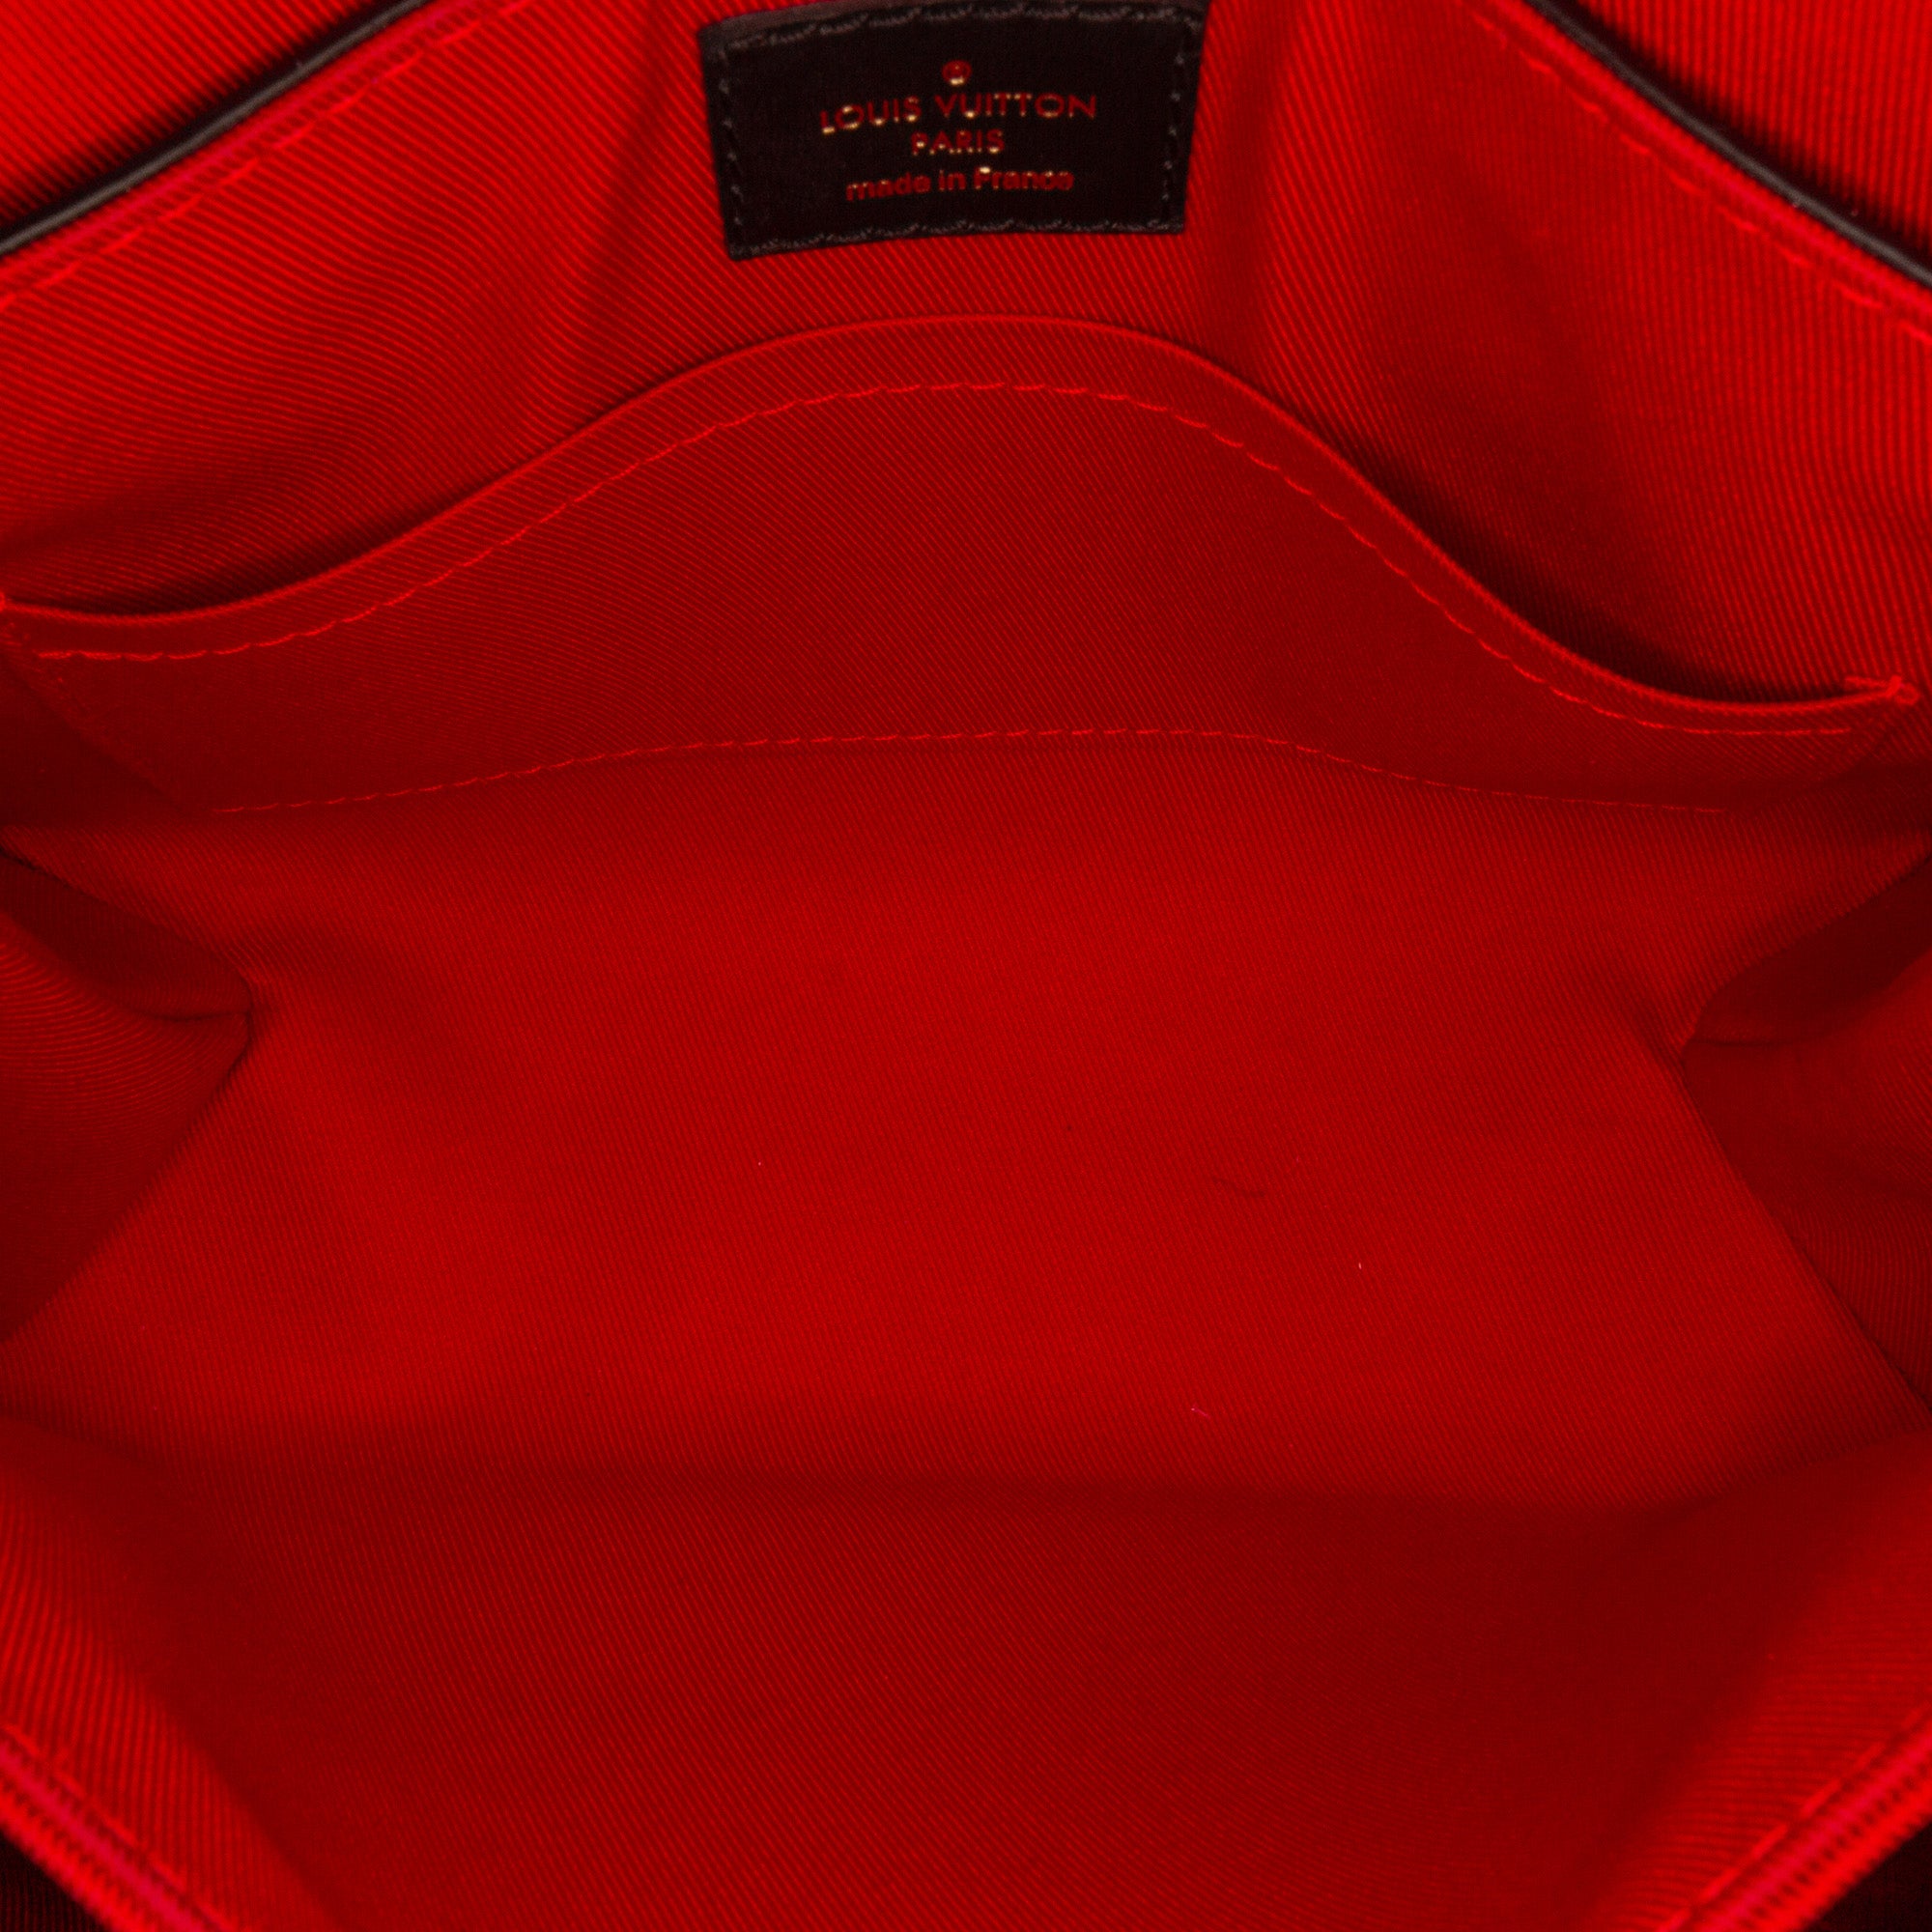 Louis Vuitton Monogram Canvas Georges BB Satchel, Louis Vuitton Handbags